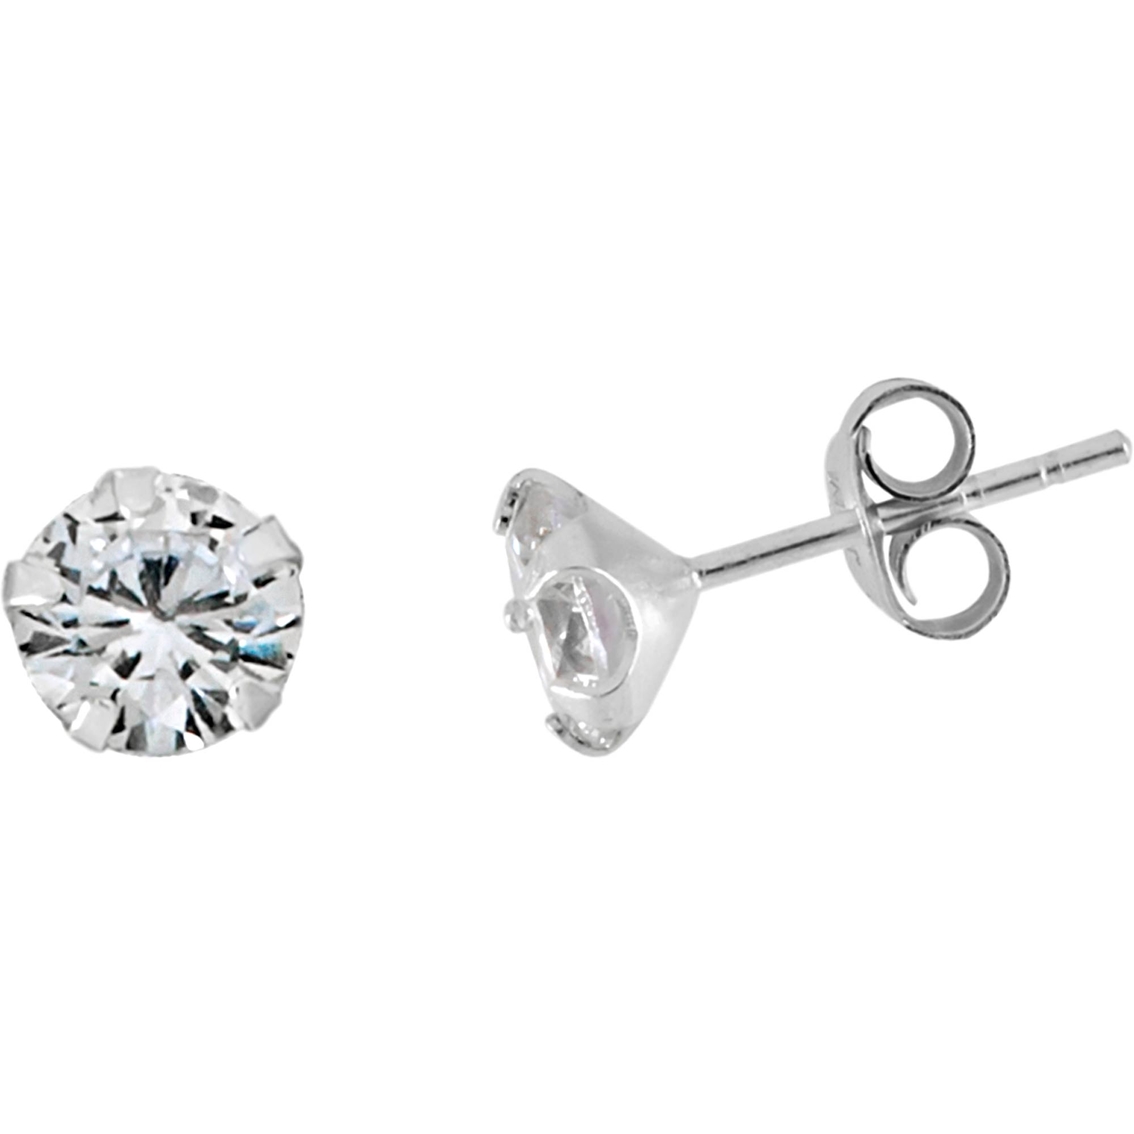 6mm Round Cubic Zirconia Stud Earrings | Fashion Earrings | Jewelry ...